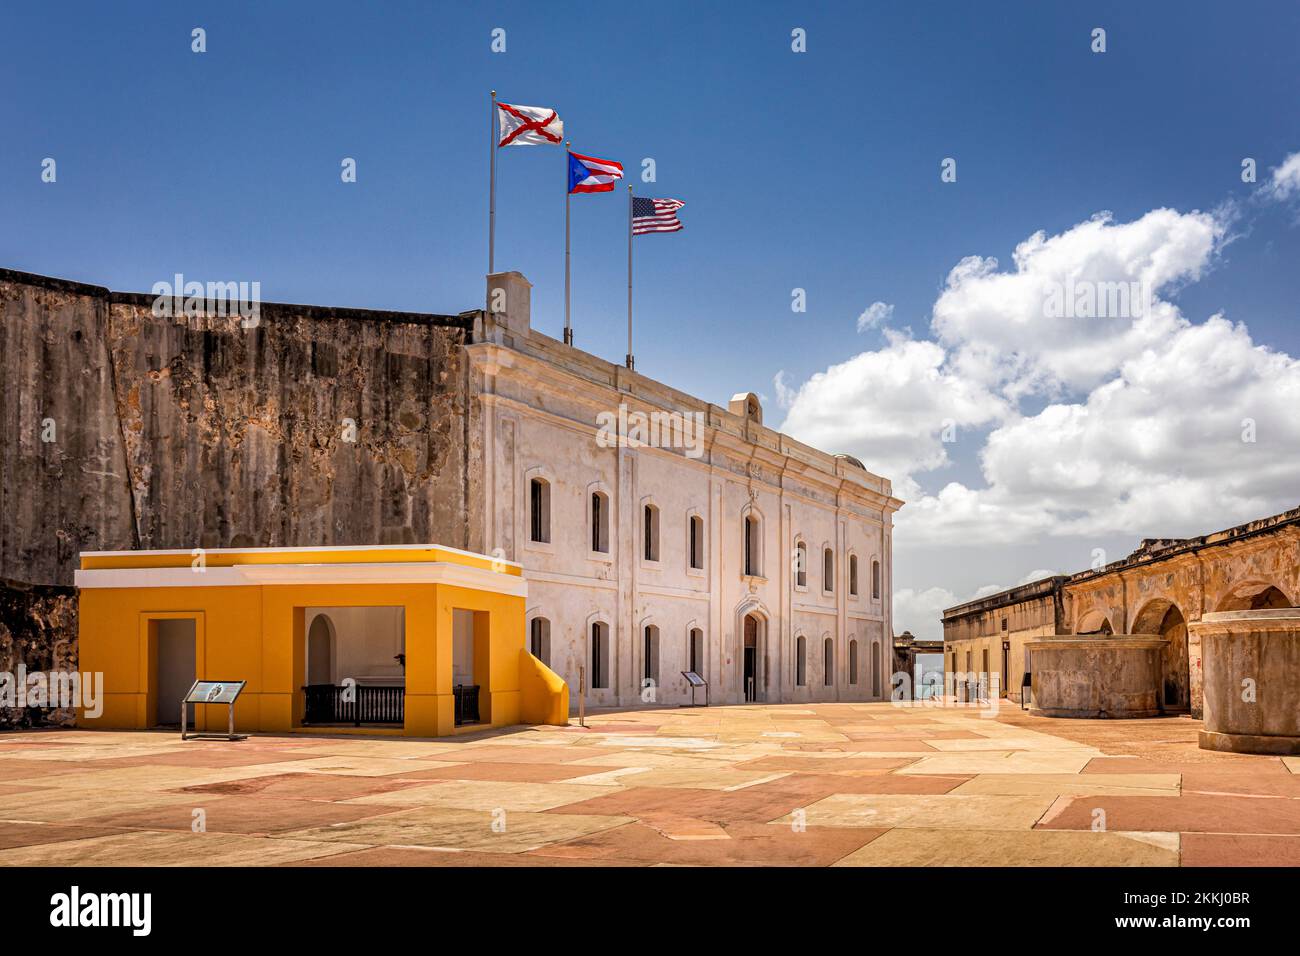 Das San Cristobal Castle in Old San Juan auf der tropischen karibischen Insel Puerto Rico, USA. Stockfoto